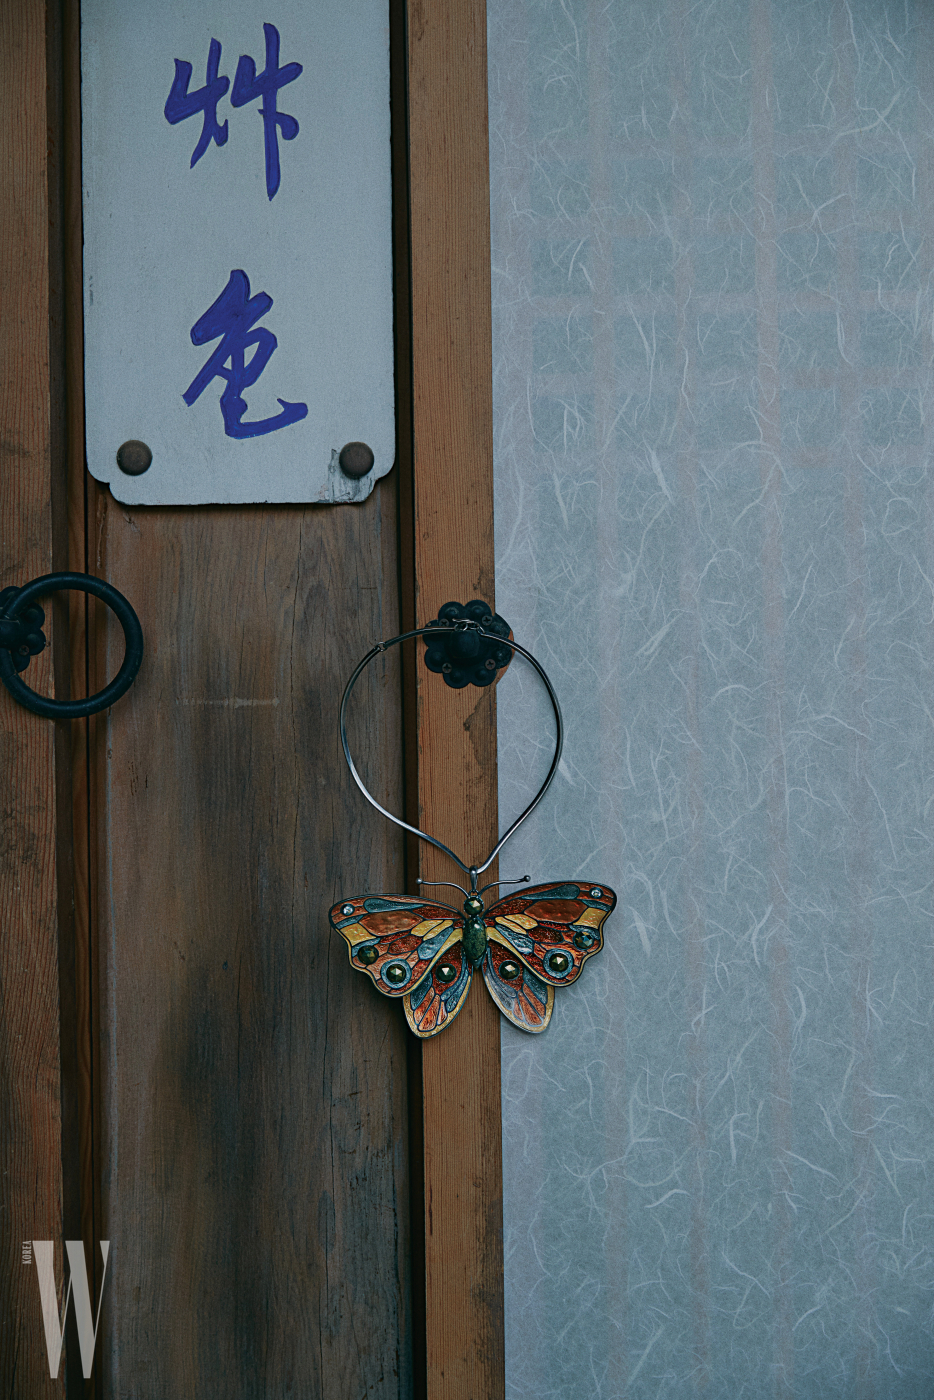 자개 조각을 맞춰 완성한 나비 목걸이는 보테가 베네타 제품.